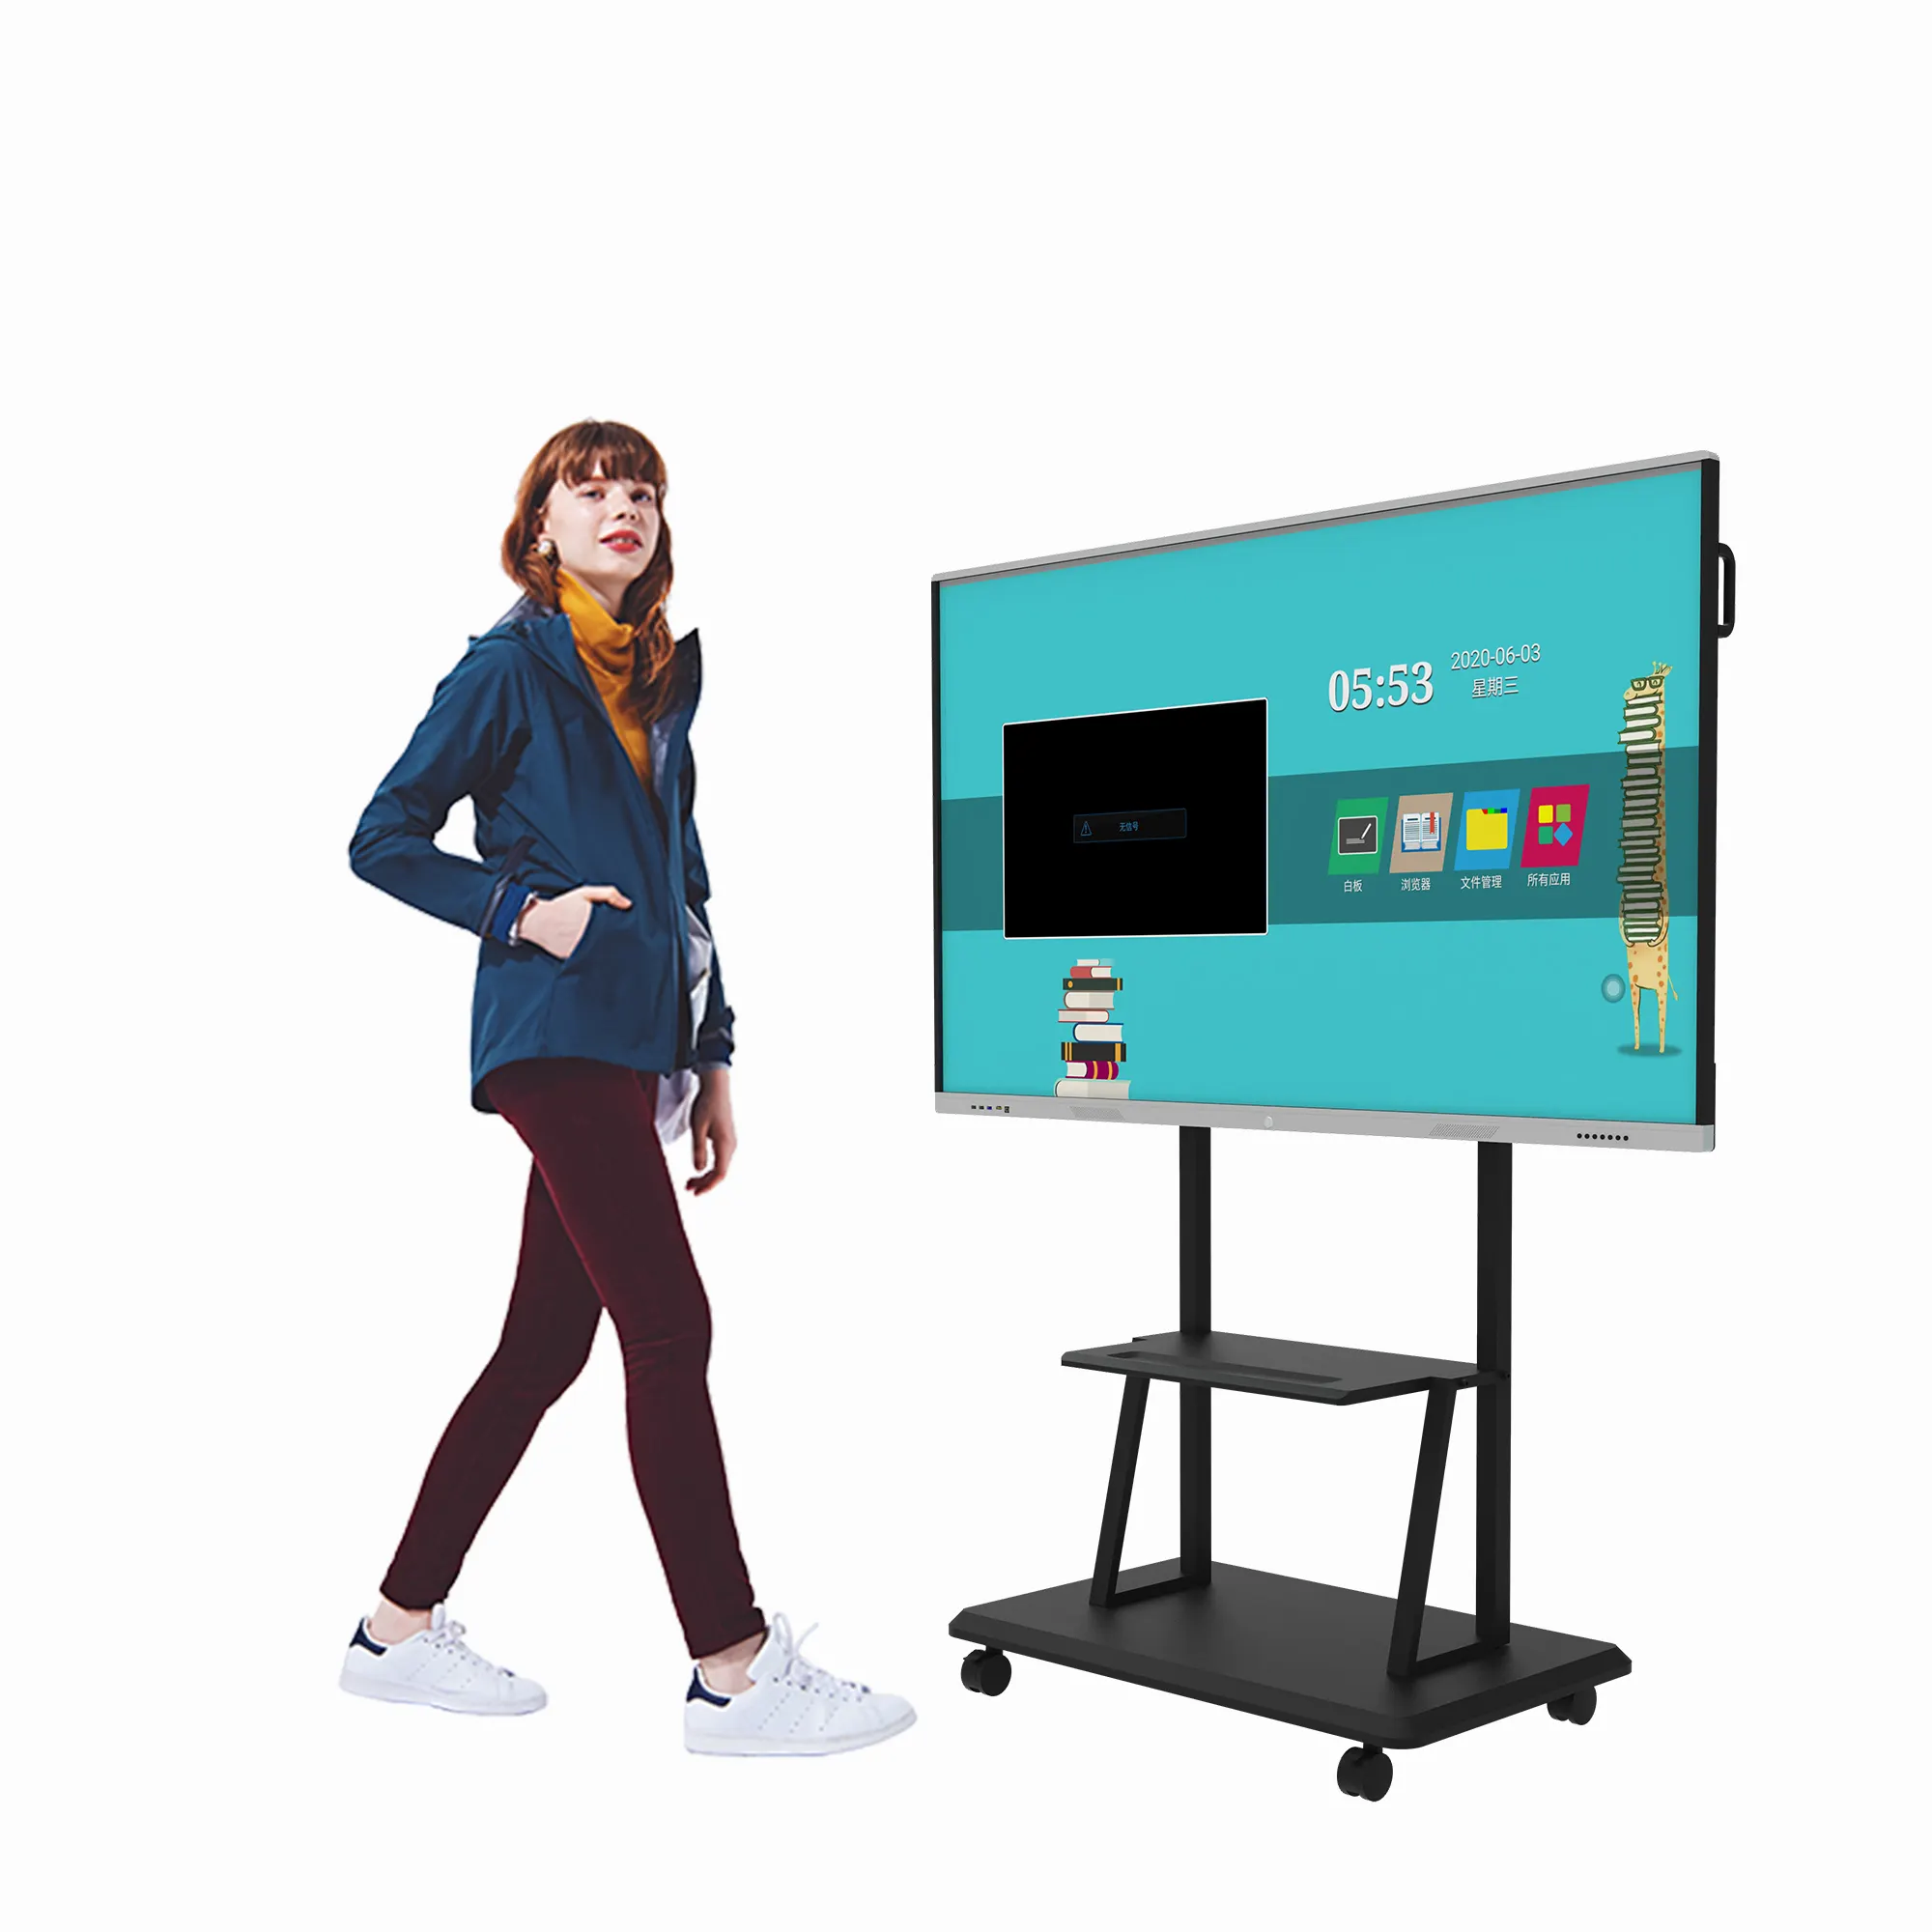 Pizarra electrónica interactiva digital para aula, pantalla LCD inteligente de 100 pulgadas, multitáctil